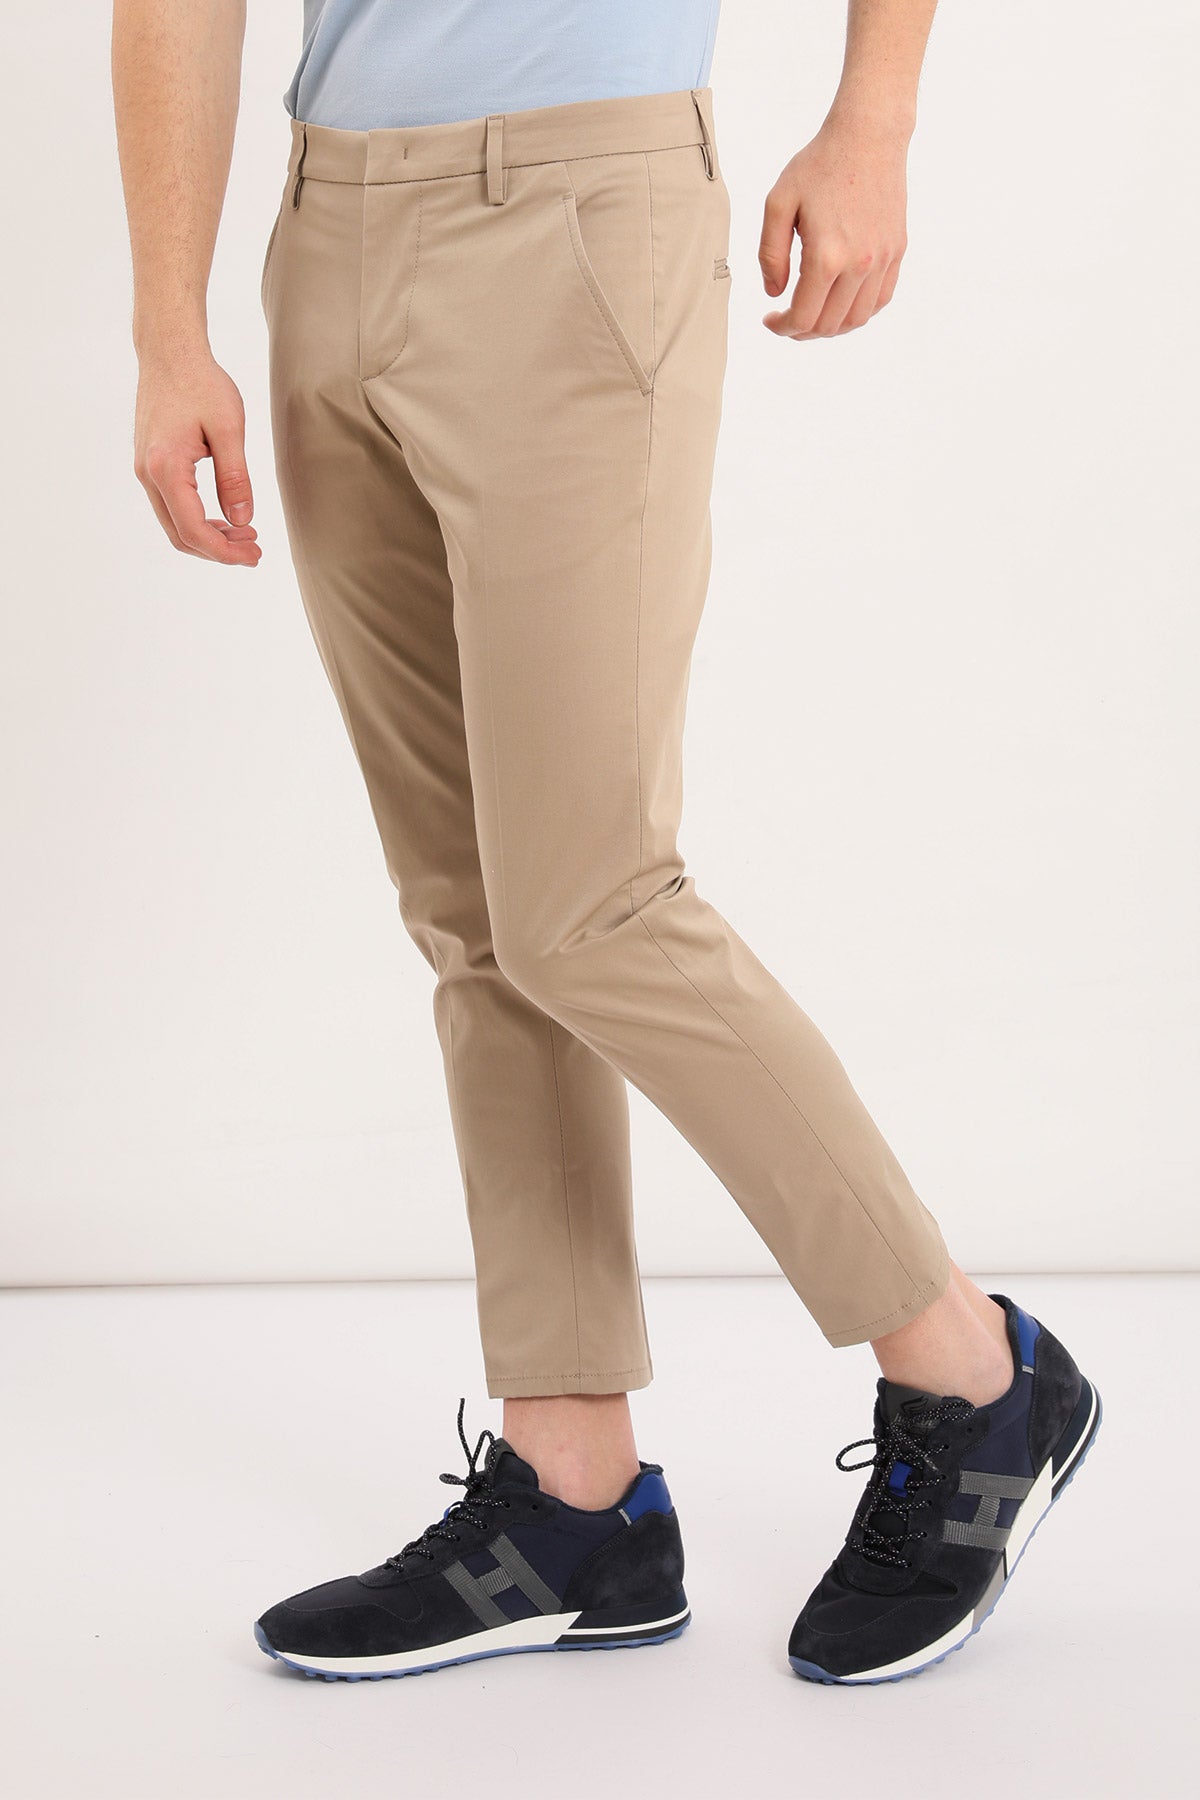 Dondup Pantolon-Libas Trendy Fashion Store